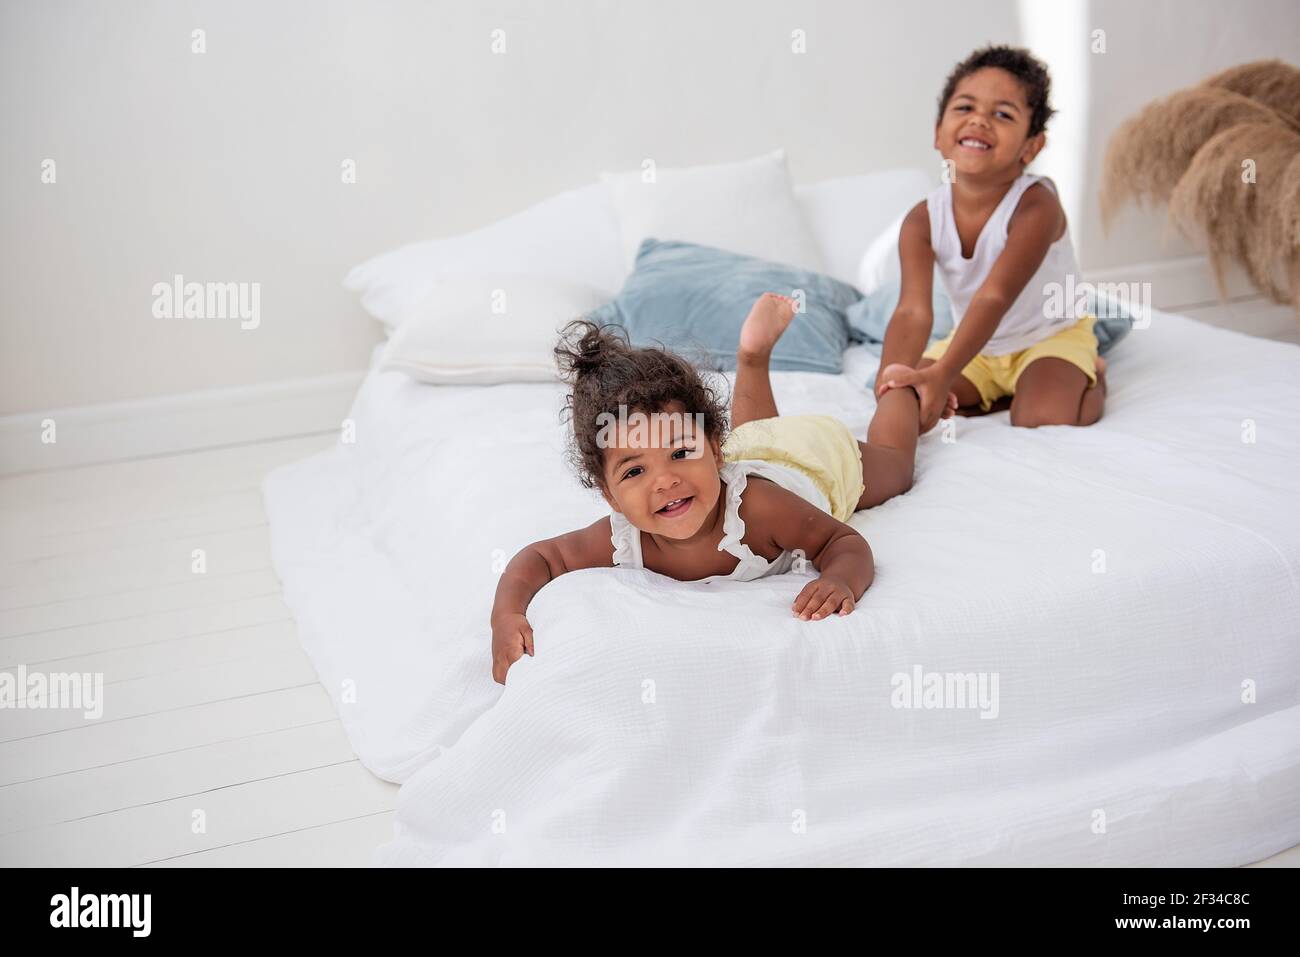 Bruder und Schwester Afroamerikaner spielen zusammen auf weißem Bett in einem Loft-Innenraum. Geschwister haben Spaß unter den blauen Kissen am Morgen. Junge pul Stockfoto